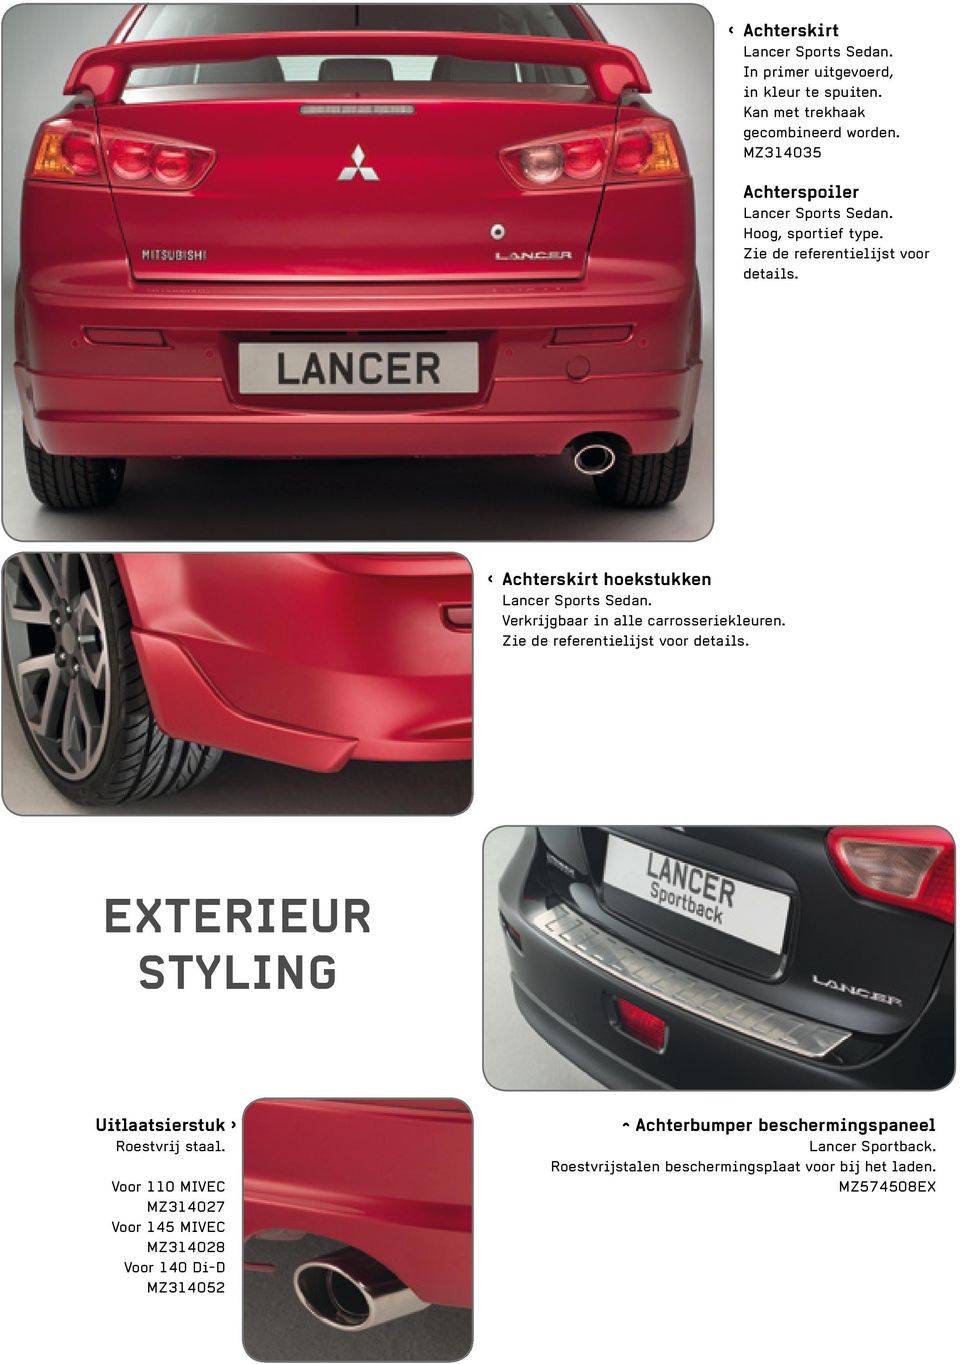 Achterskirt hoekstukken Lancer Sports Sedan. Verkrijgbaar in alle carrosseriekleuren. Zie de referentielijst voor details.